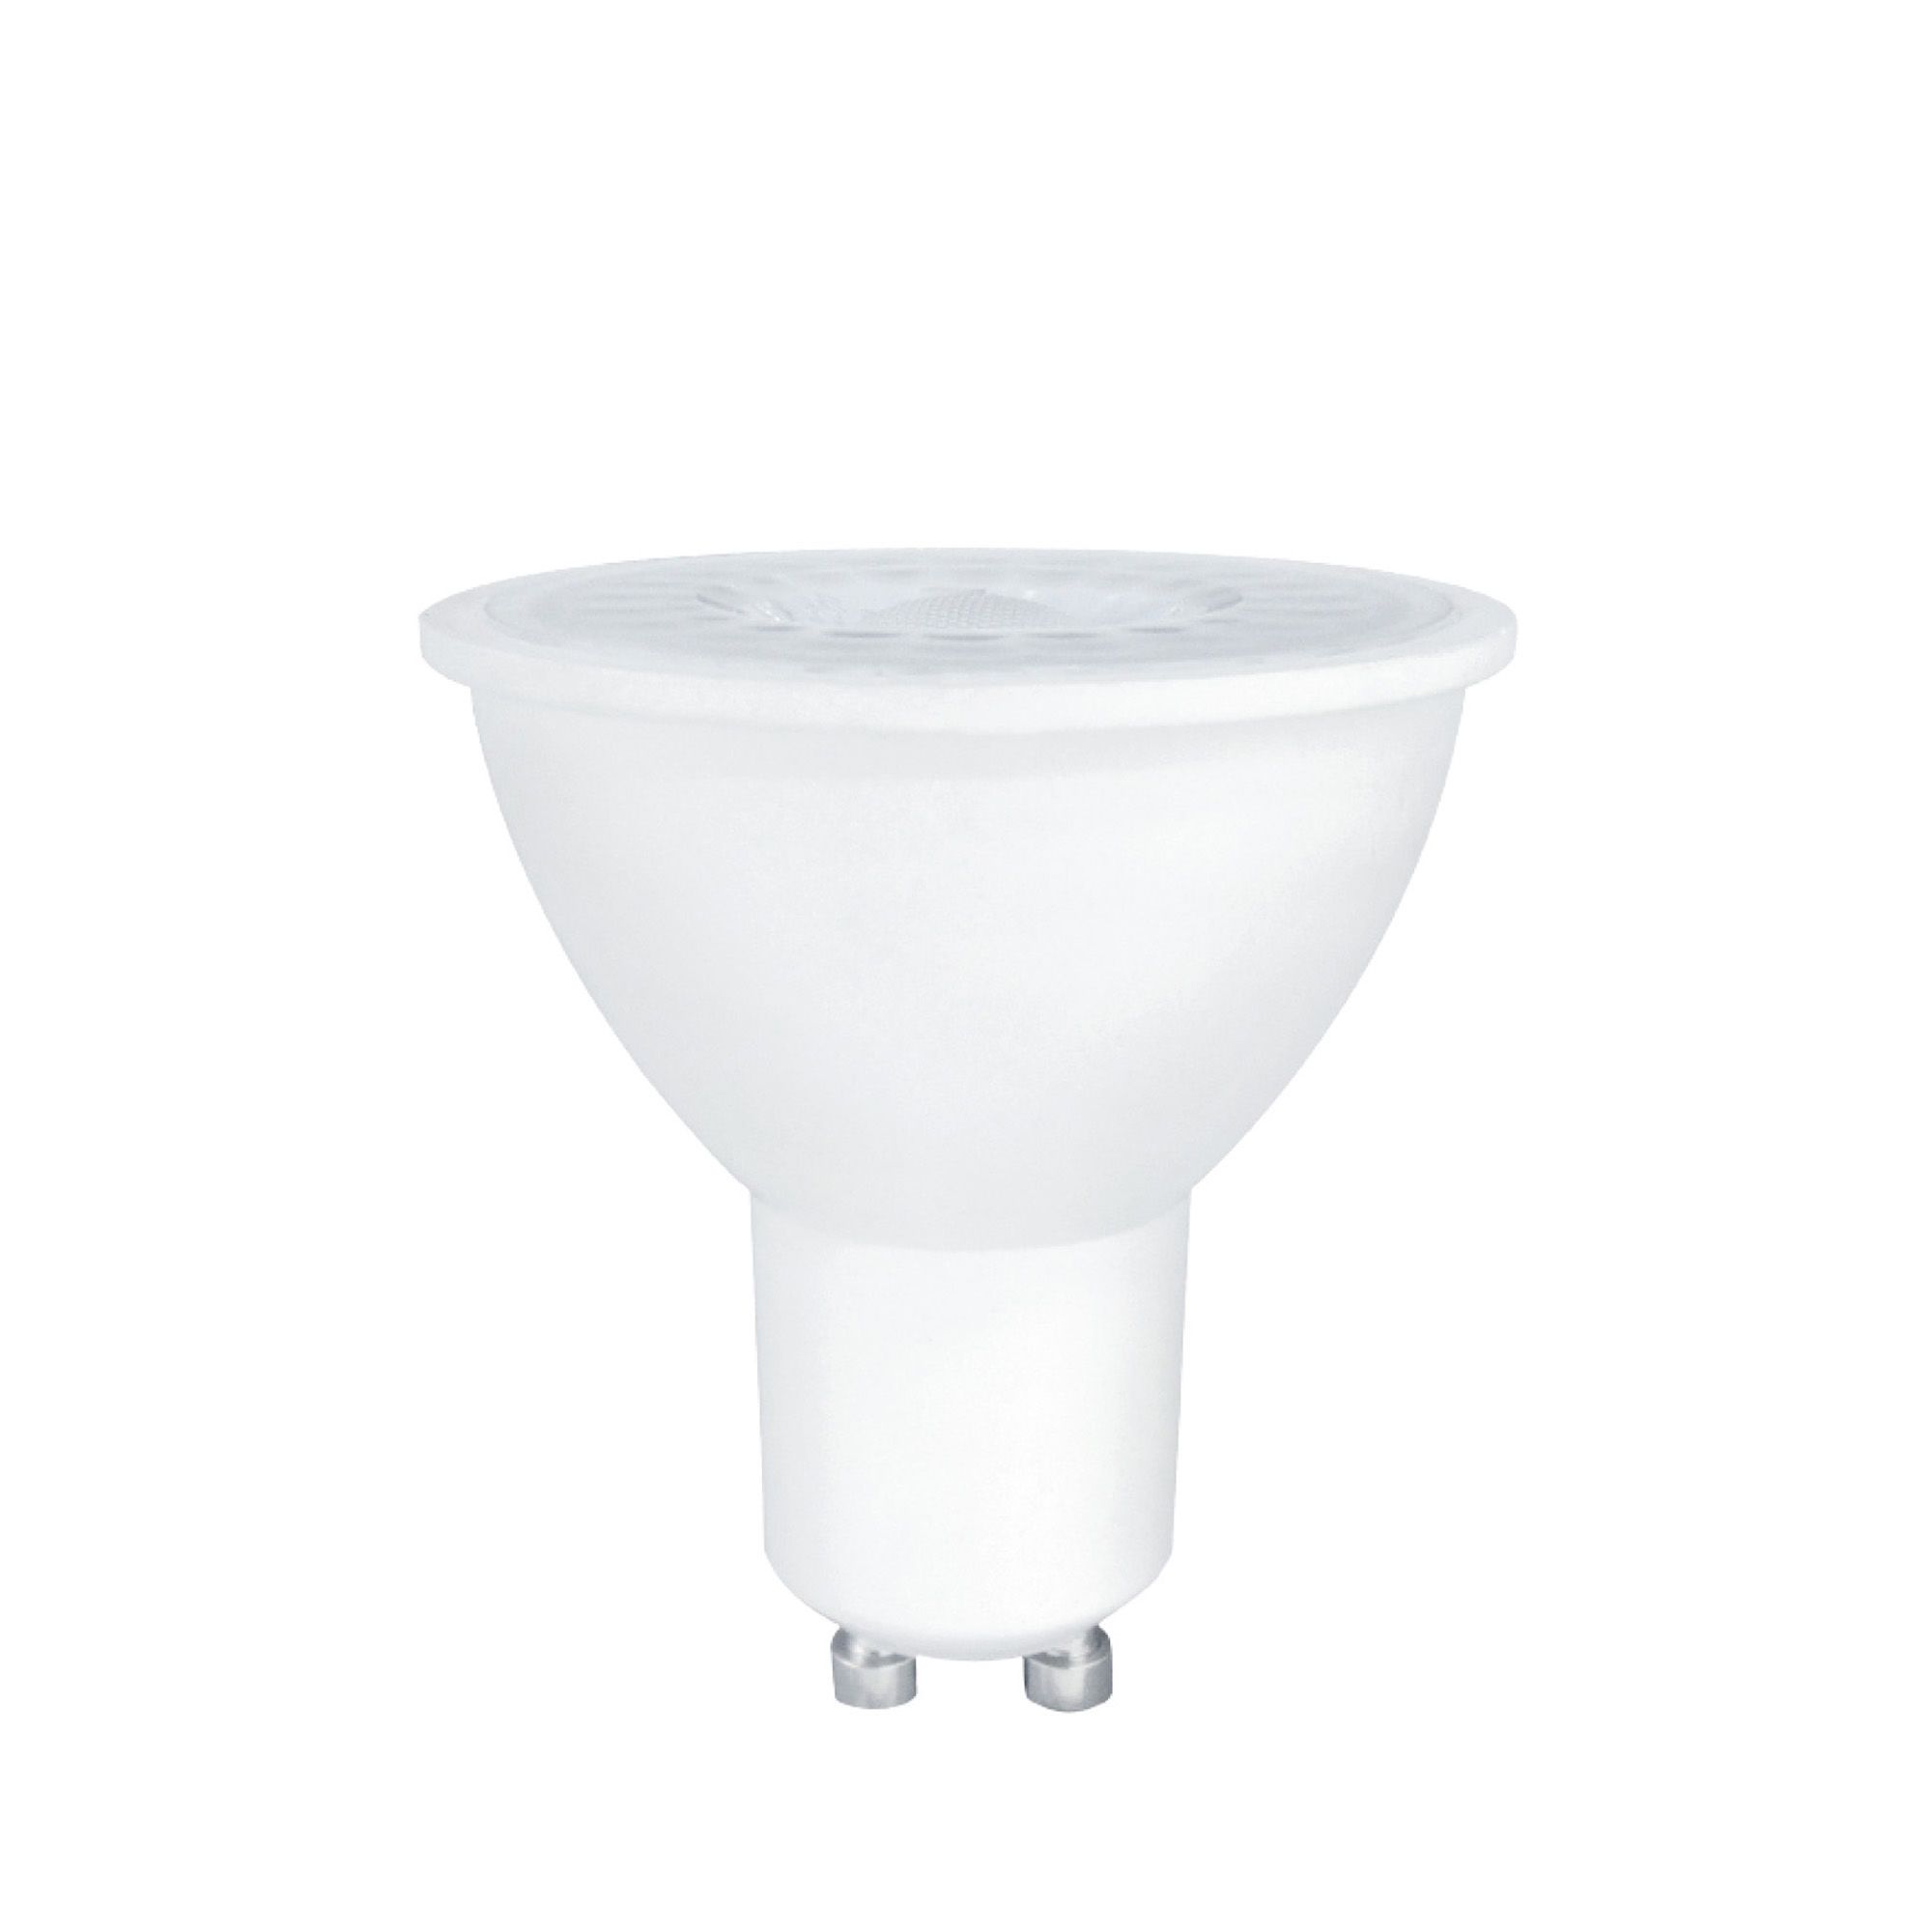 Ampoules LED GU10 - Achetez en ligne